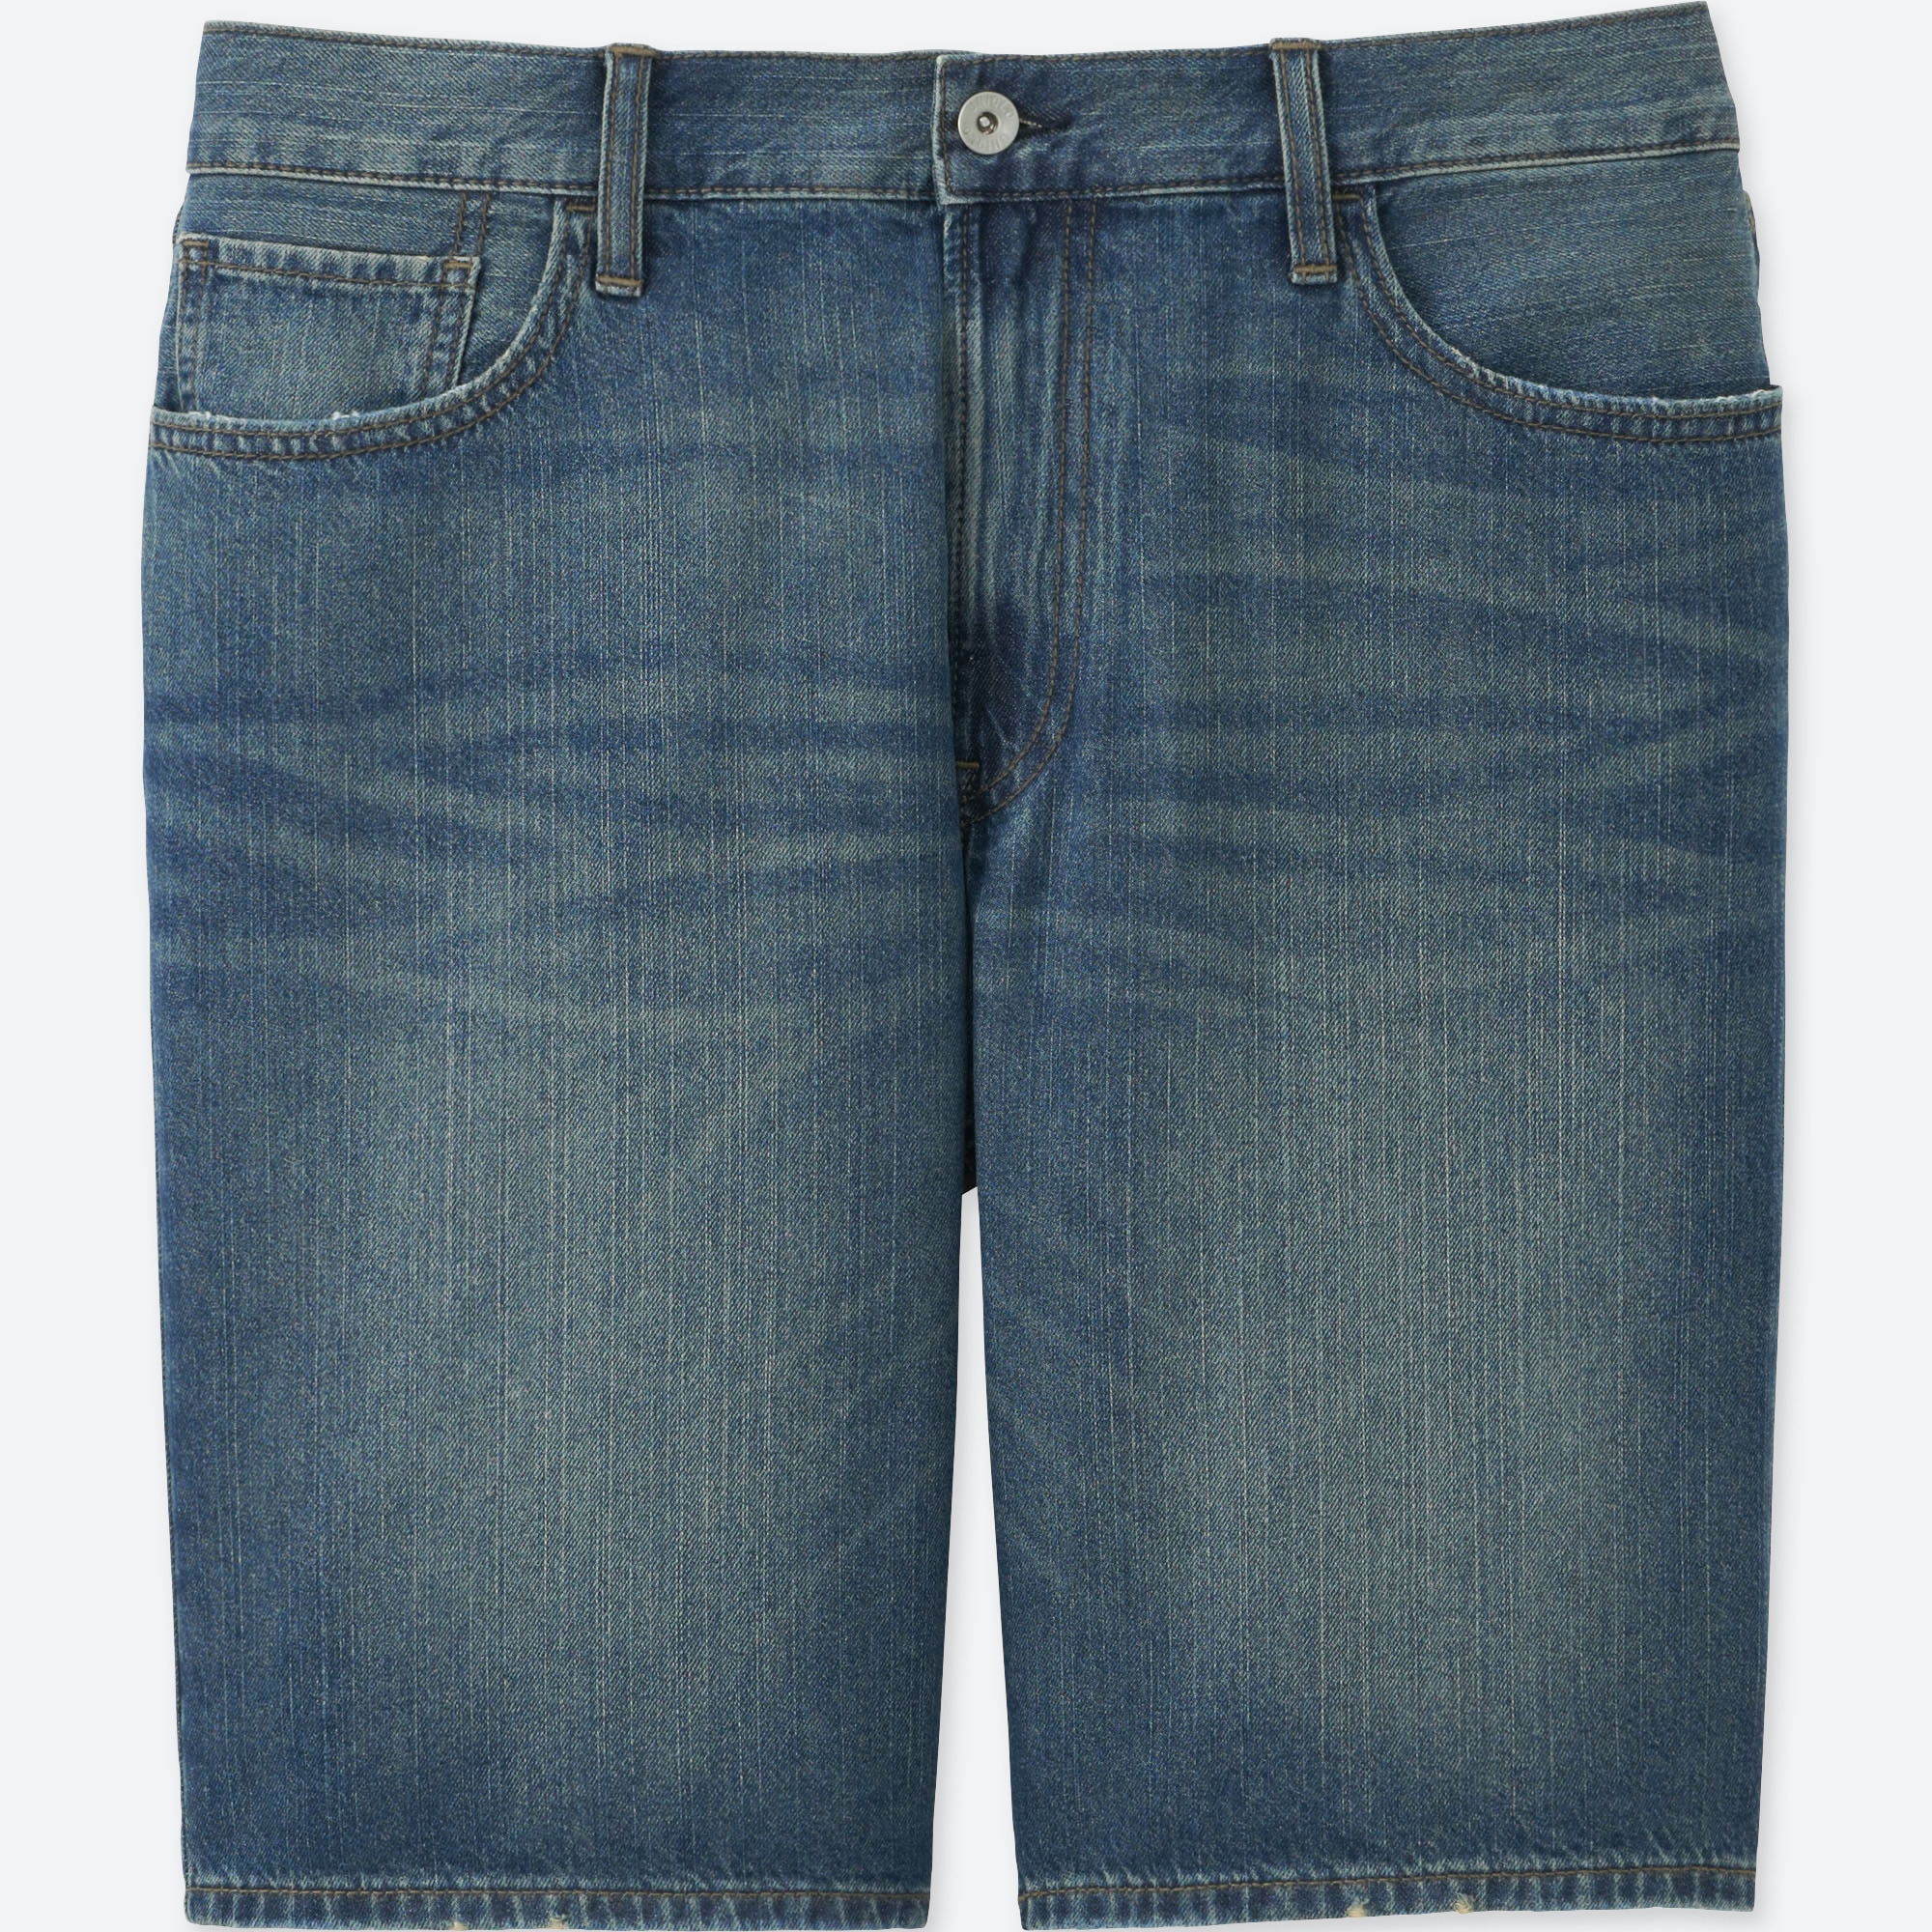 balmain skinny jeans